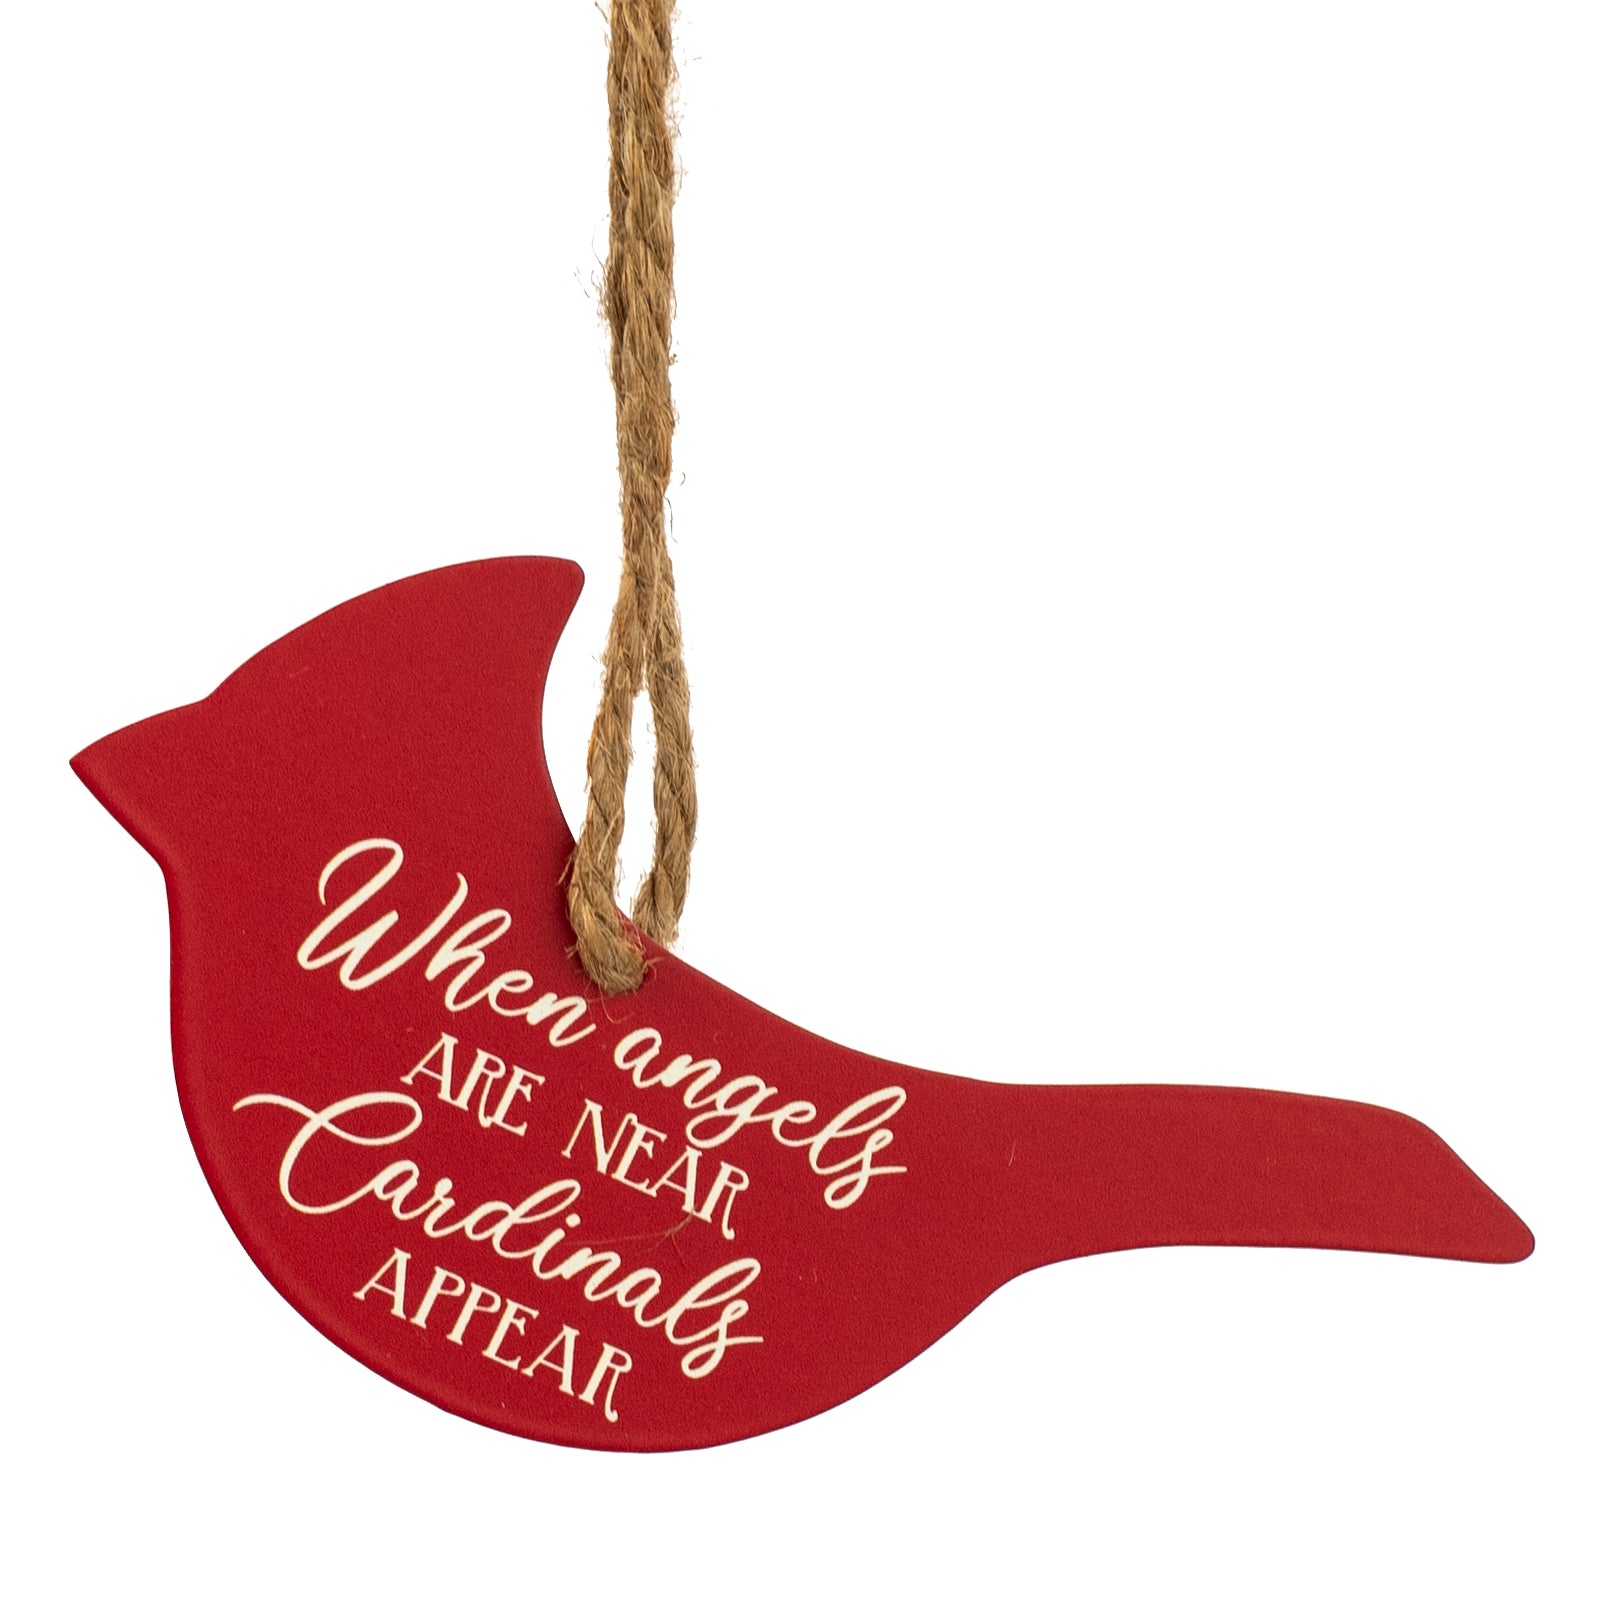 5.5" Metal Ornament Sign: Cardinals Appear